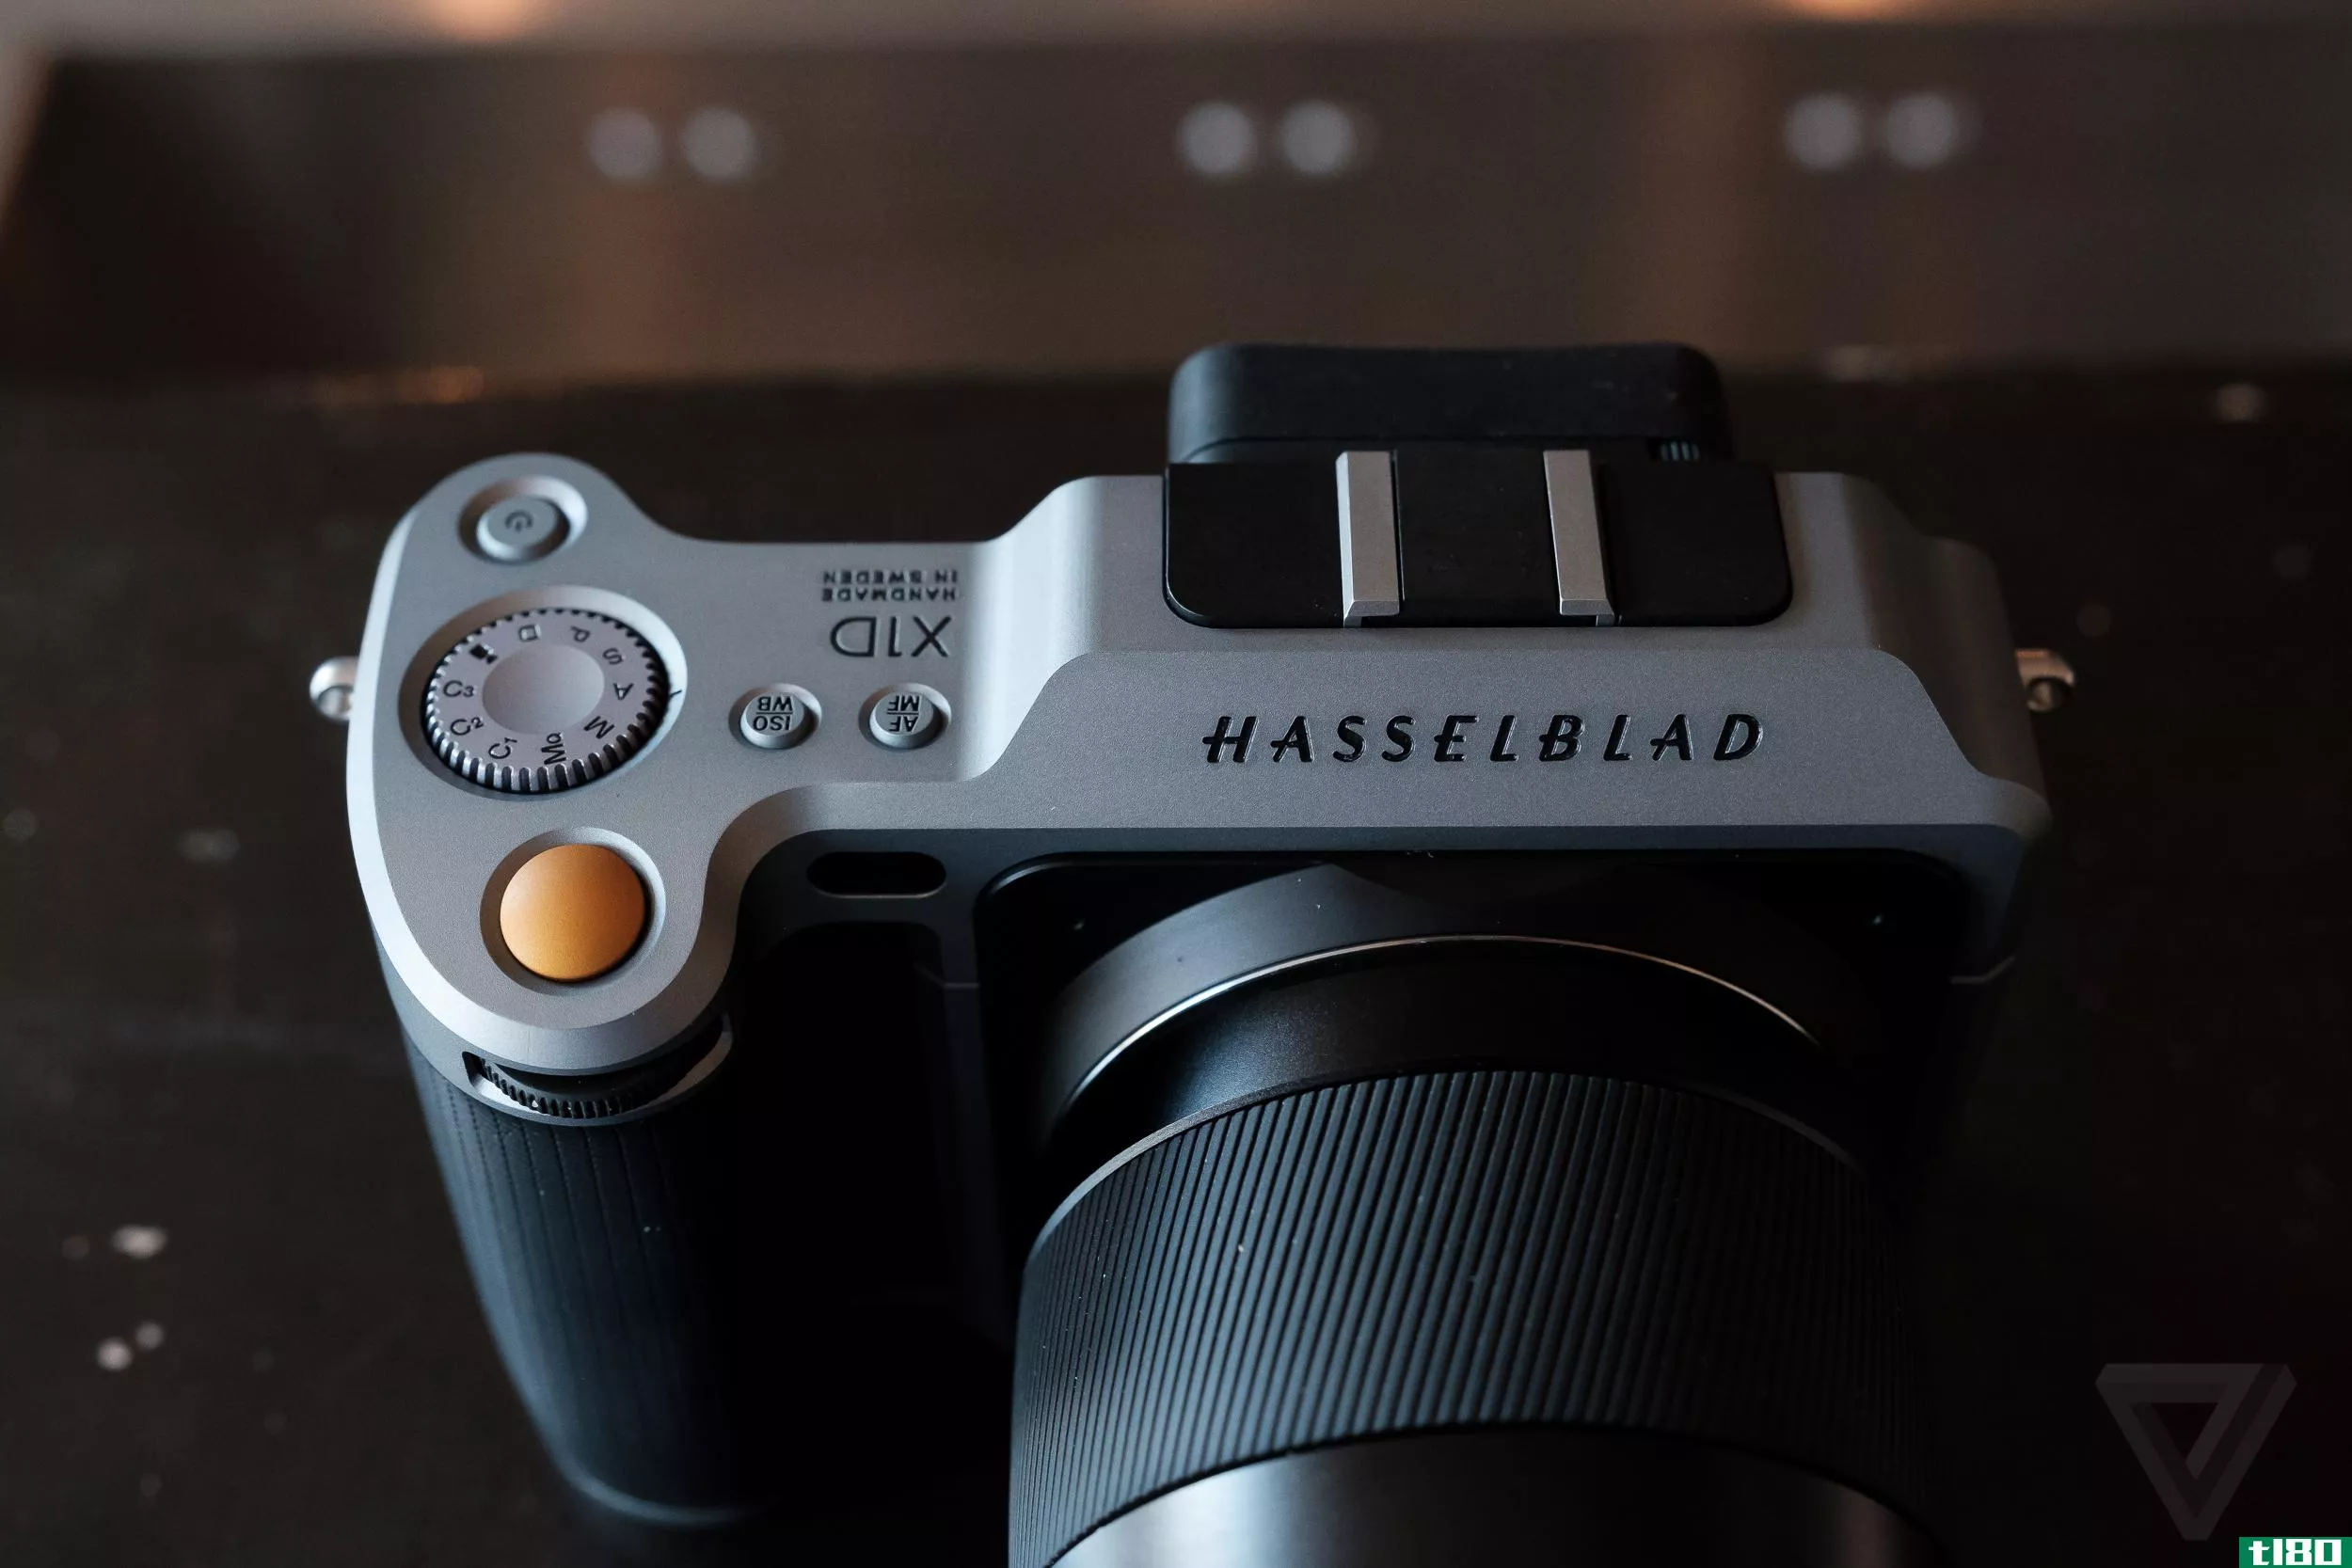 据报道，dji收购了历史相机公司hasselblad的多数股权